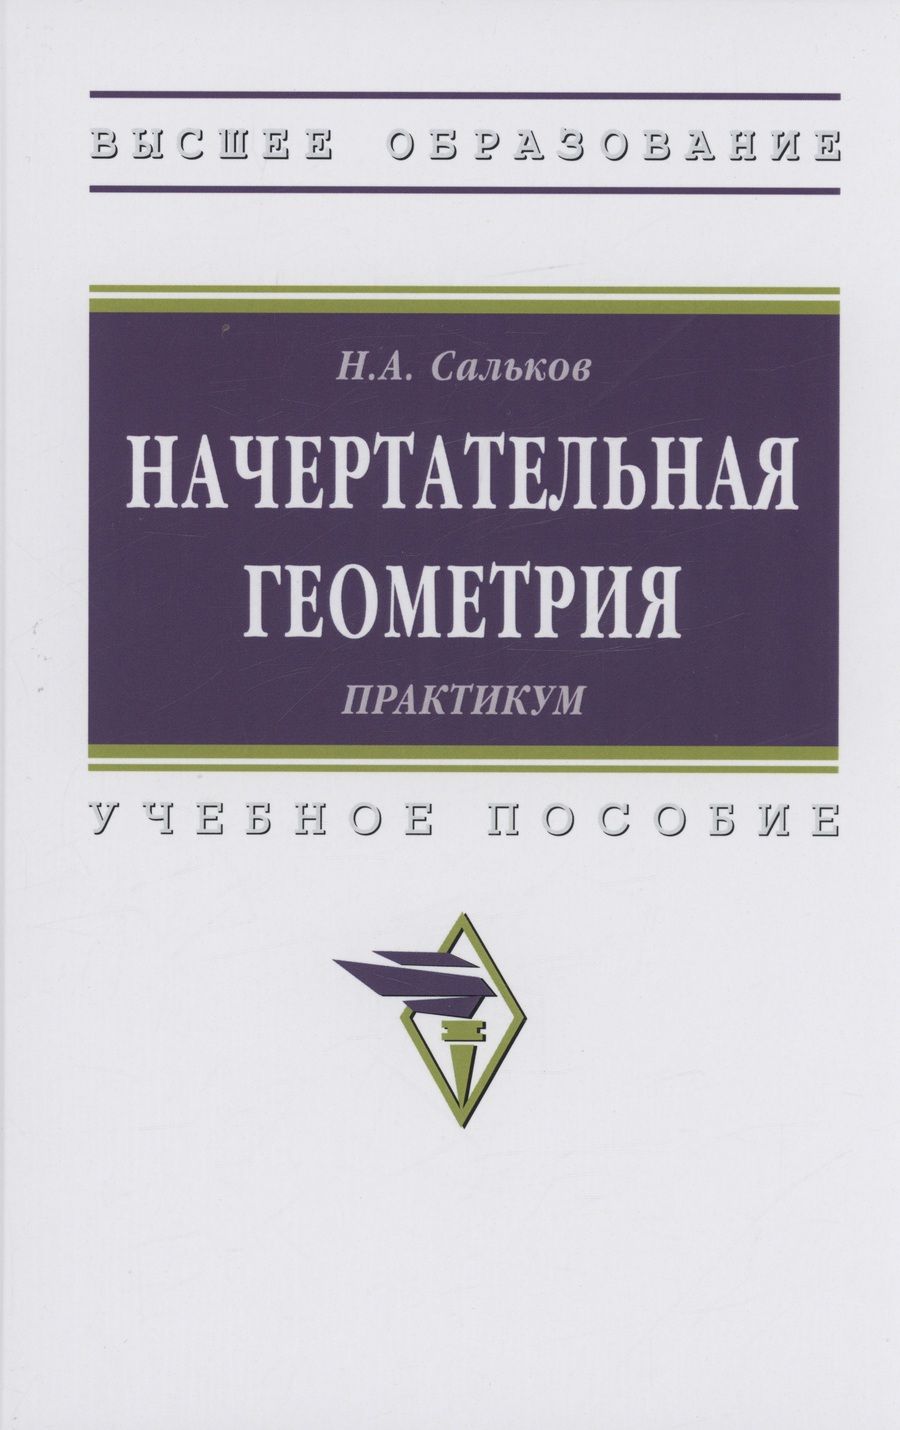 Обложка книги "Сальков: Начертательная геометрии. Практикум"